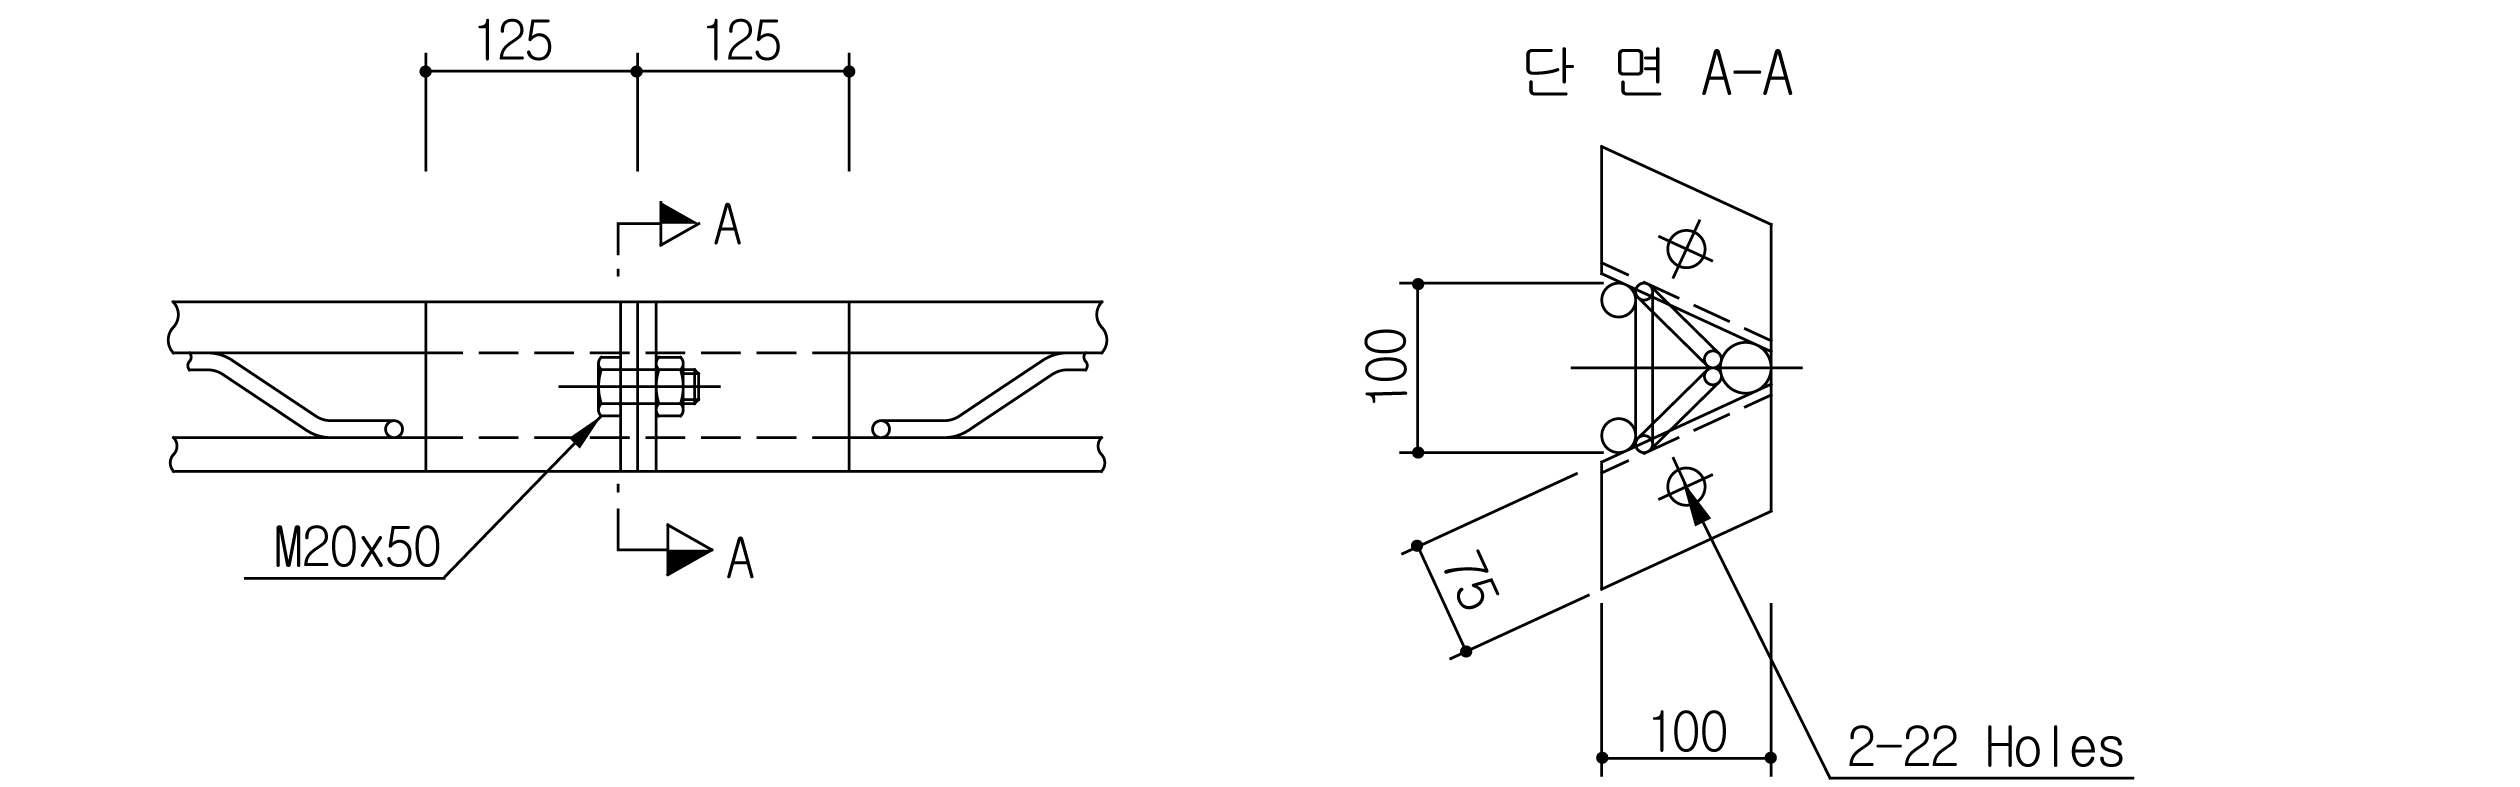 격자지보형(삼각단면 3개강봉) 강지보재의 이음부 설계 예